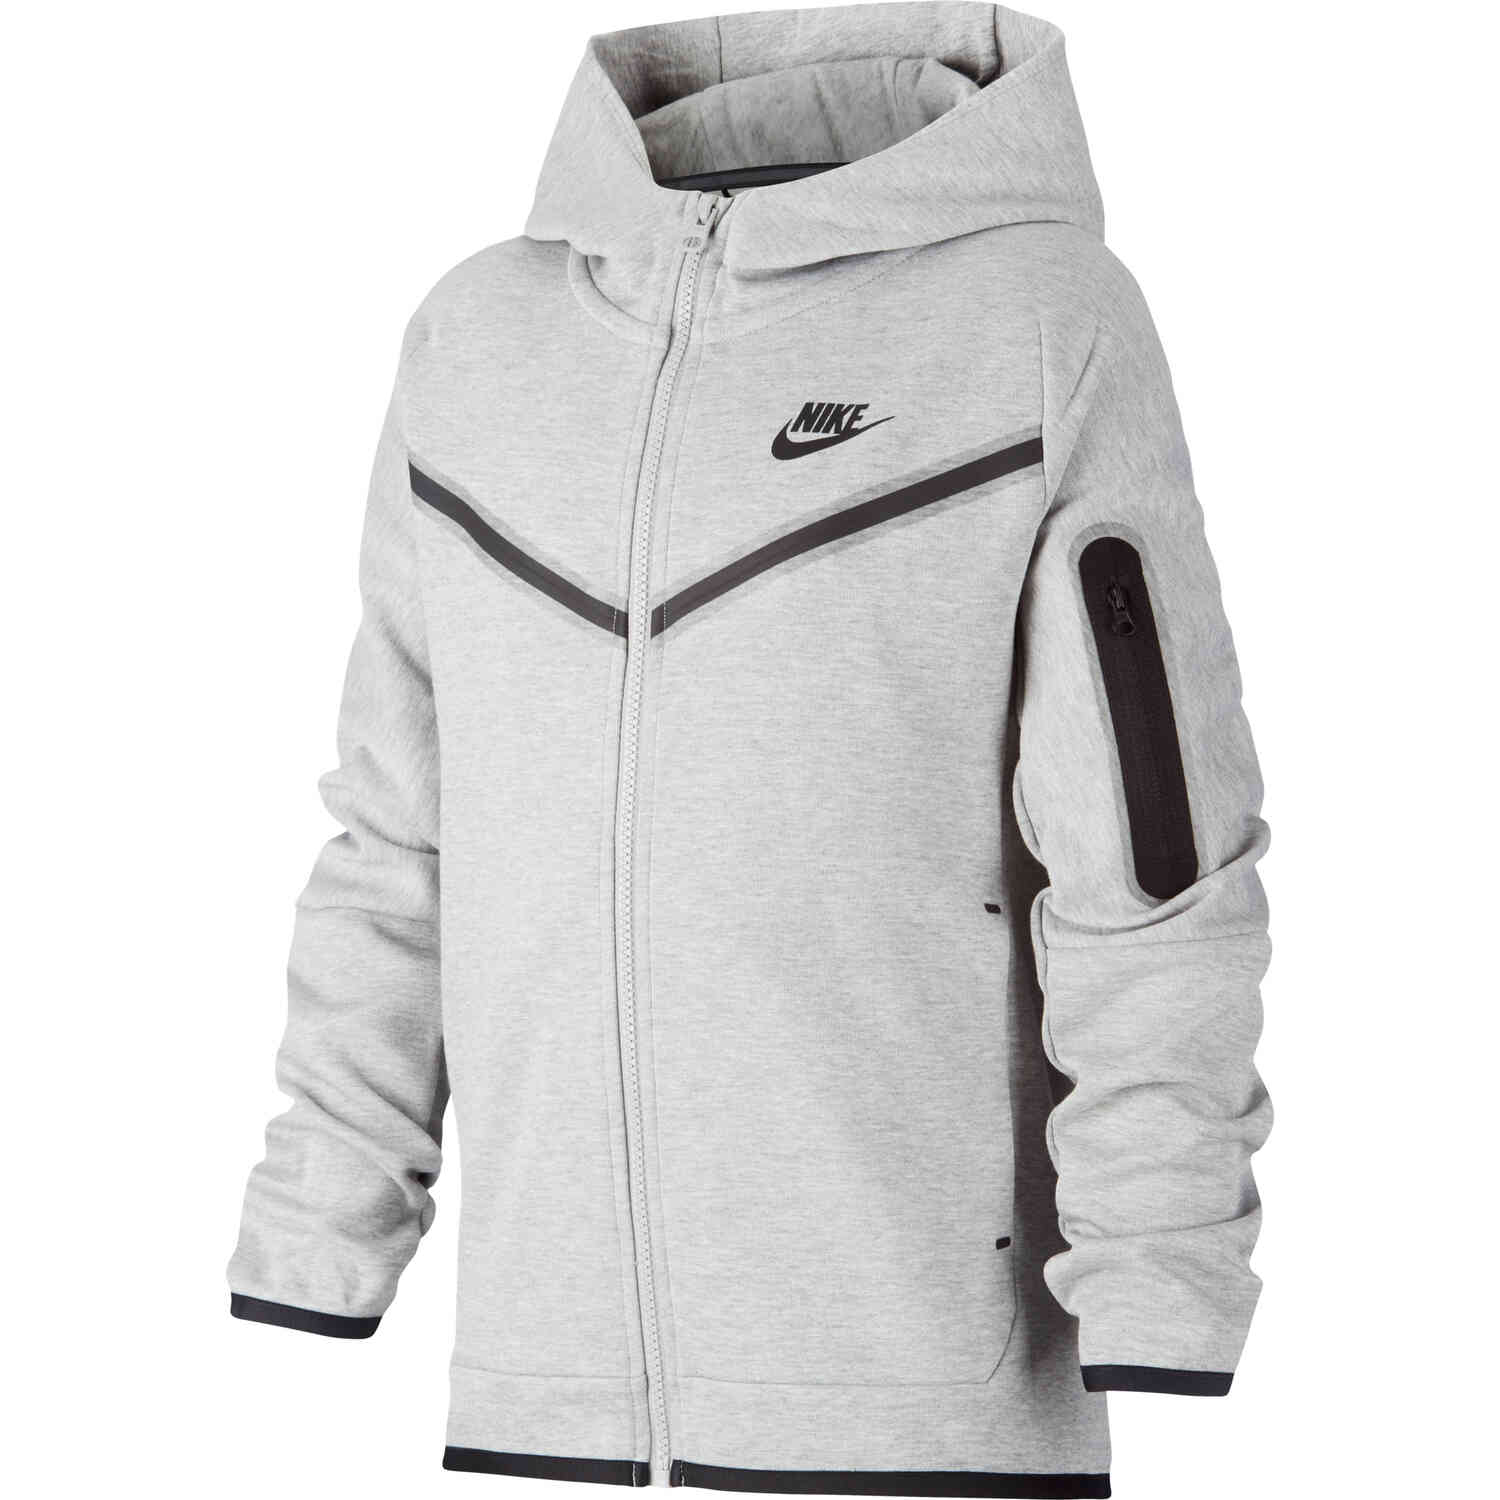 Kids Nike Sportswear Tech Fleece Full-zip Hoodie - Dk Grey Heather/Black -  SoccerPro